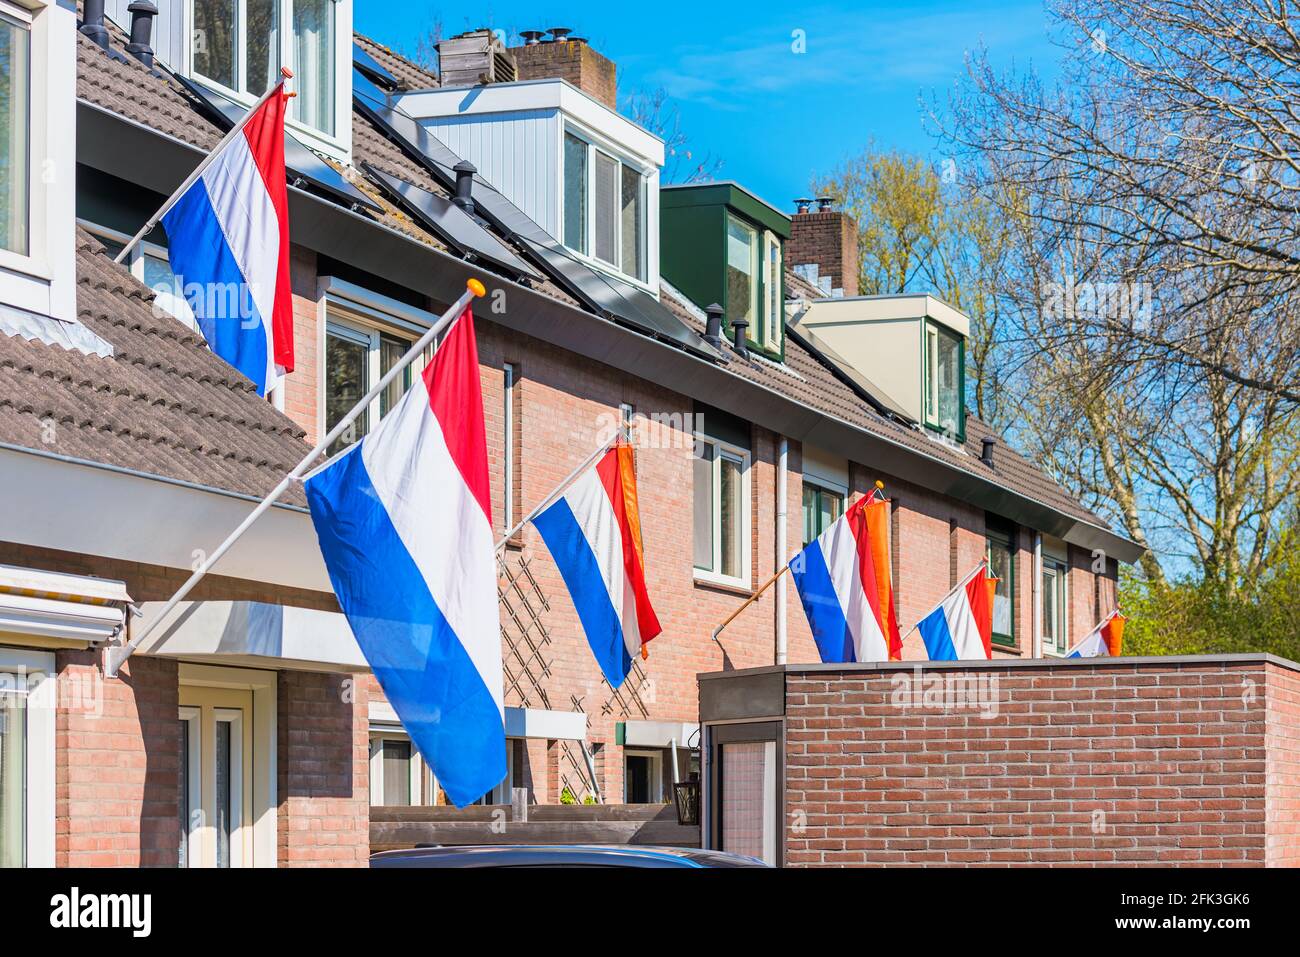 Bandiere olandesi appese all'esterno di case ad Alkmaar, Paesi Bassi, per celebrare il giorno del Re il 27 aprile, una festa nazionale nei Paesi Bassi Foto Stock